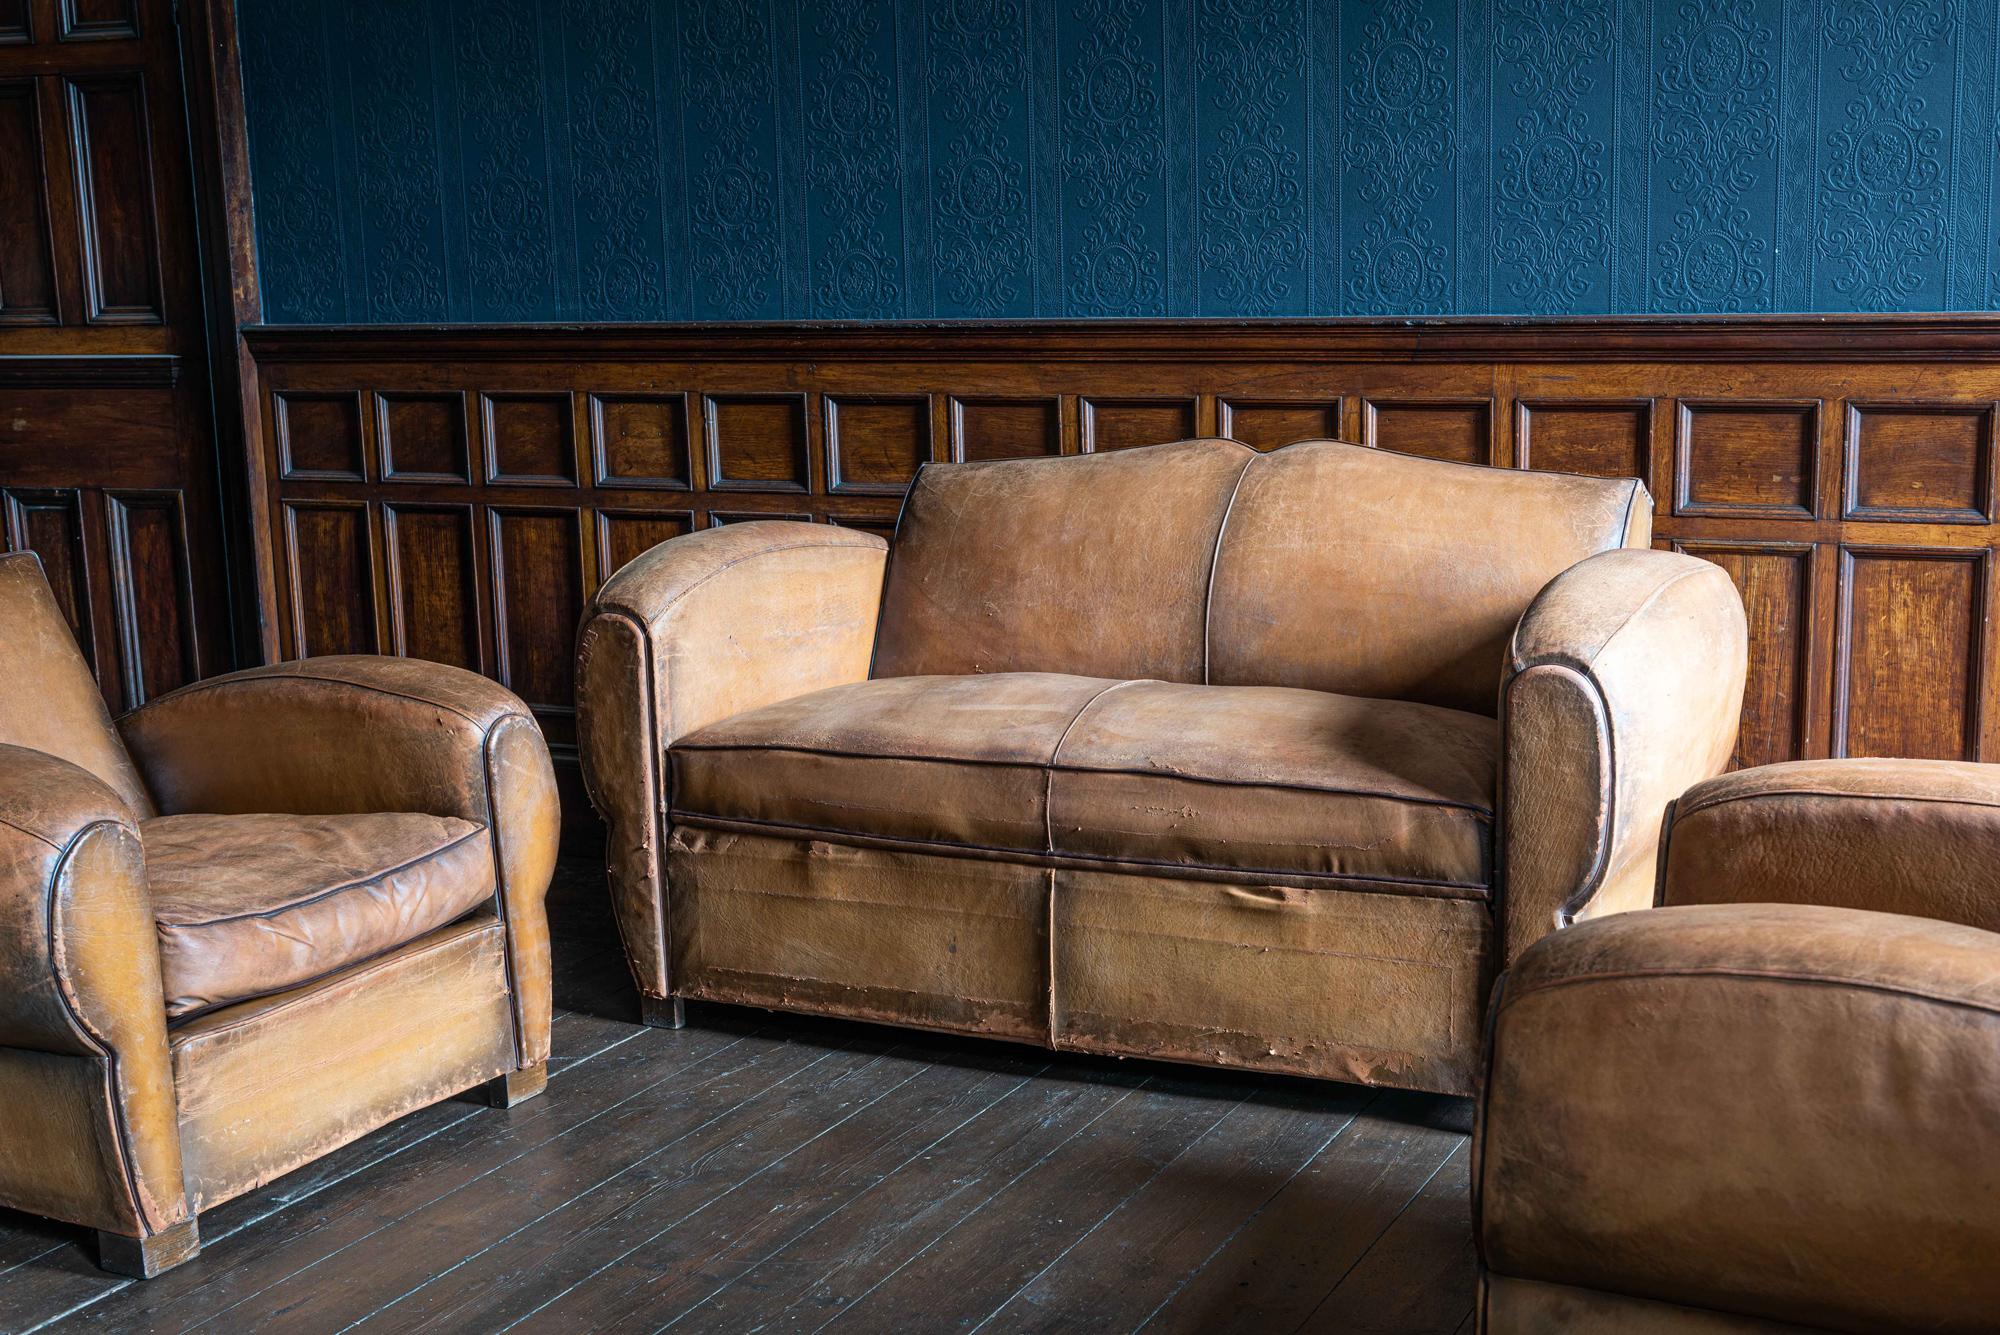 1930er Jahre Cognac Französisch Leder Schnurrbart zurück Club Stuhl Sofa-Set,
um 1930. Name des Pariser Herstellers 'L.M. Paris
Cognacfarbenes Ledersofa und -sessel mit Schnurrbart für den Salon. Die beiden Sessel haben gefederte Sitzgestelle und